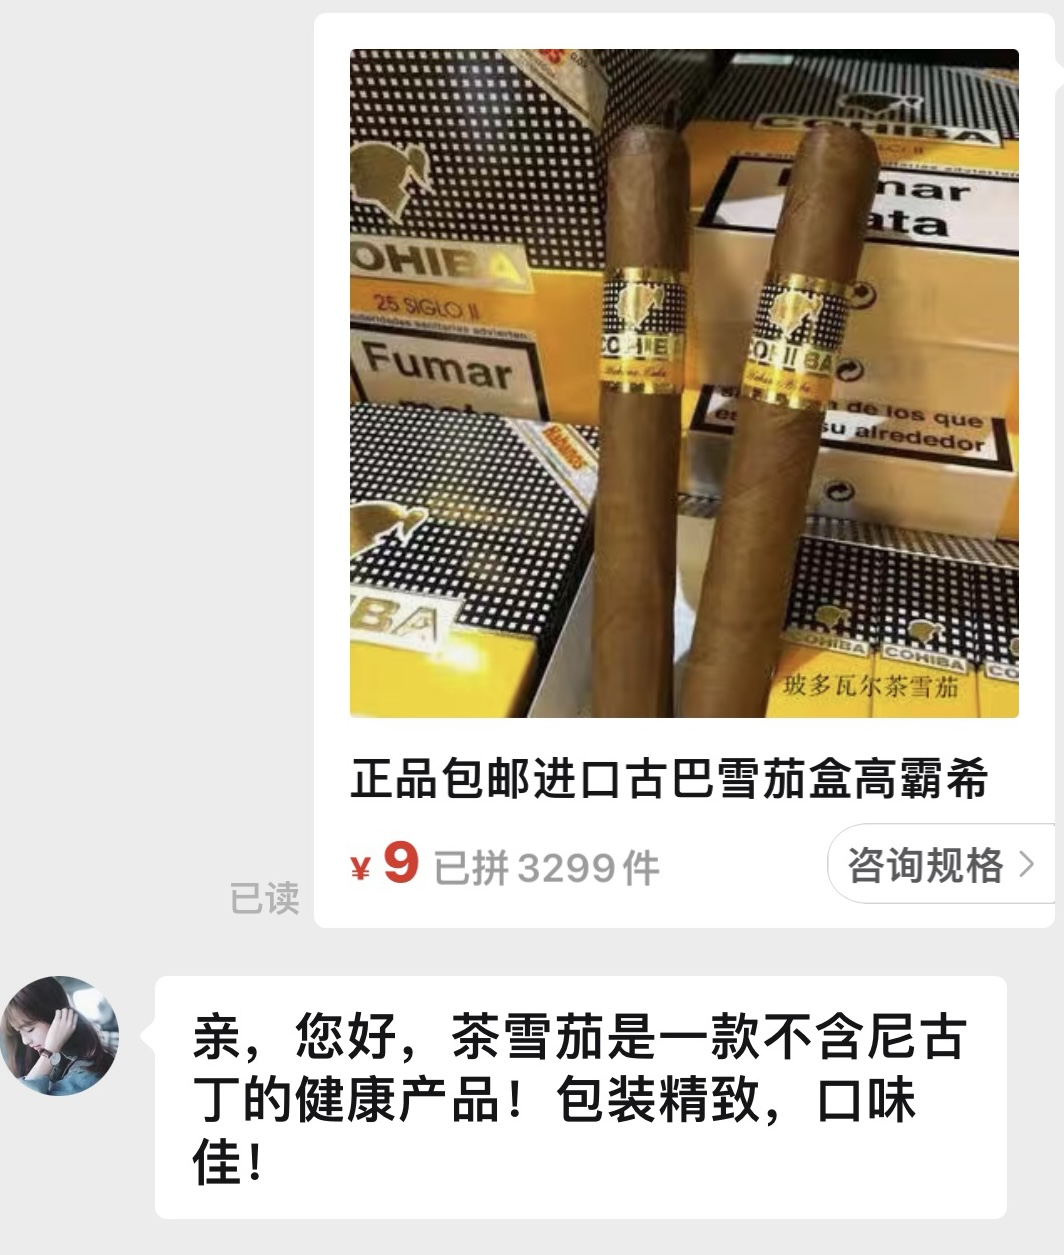 99元能买两条中华烟，拼多多在法律禁区蹦迪只是为了拉动销售额？